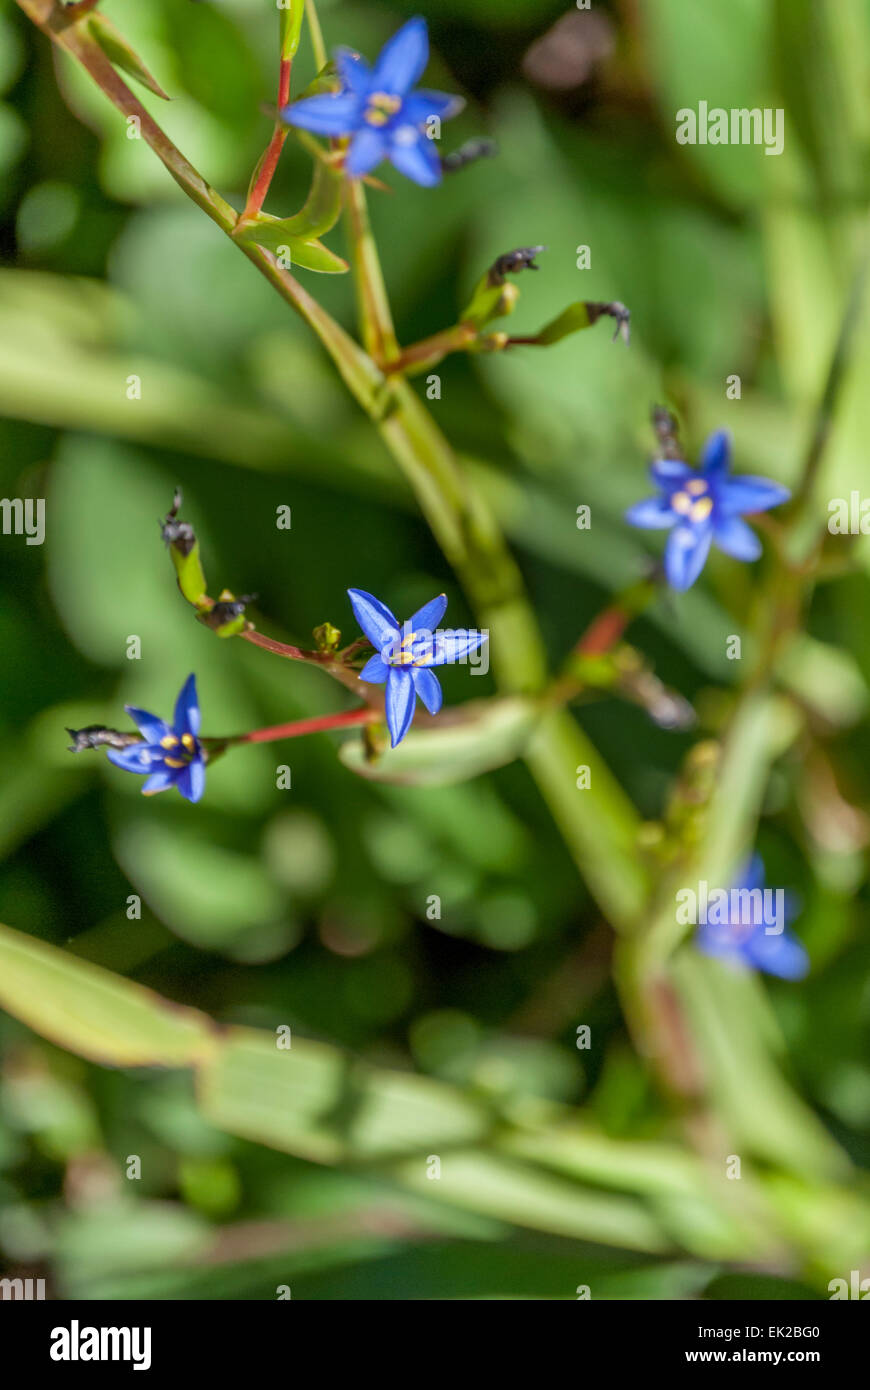 Nahaufnahme des blauen Stern Blume geformt Stockfotografie - Alamy